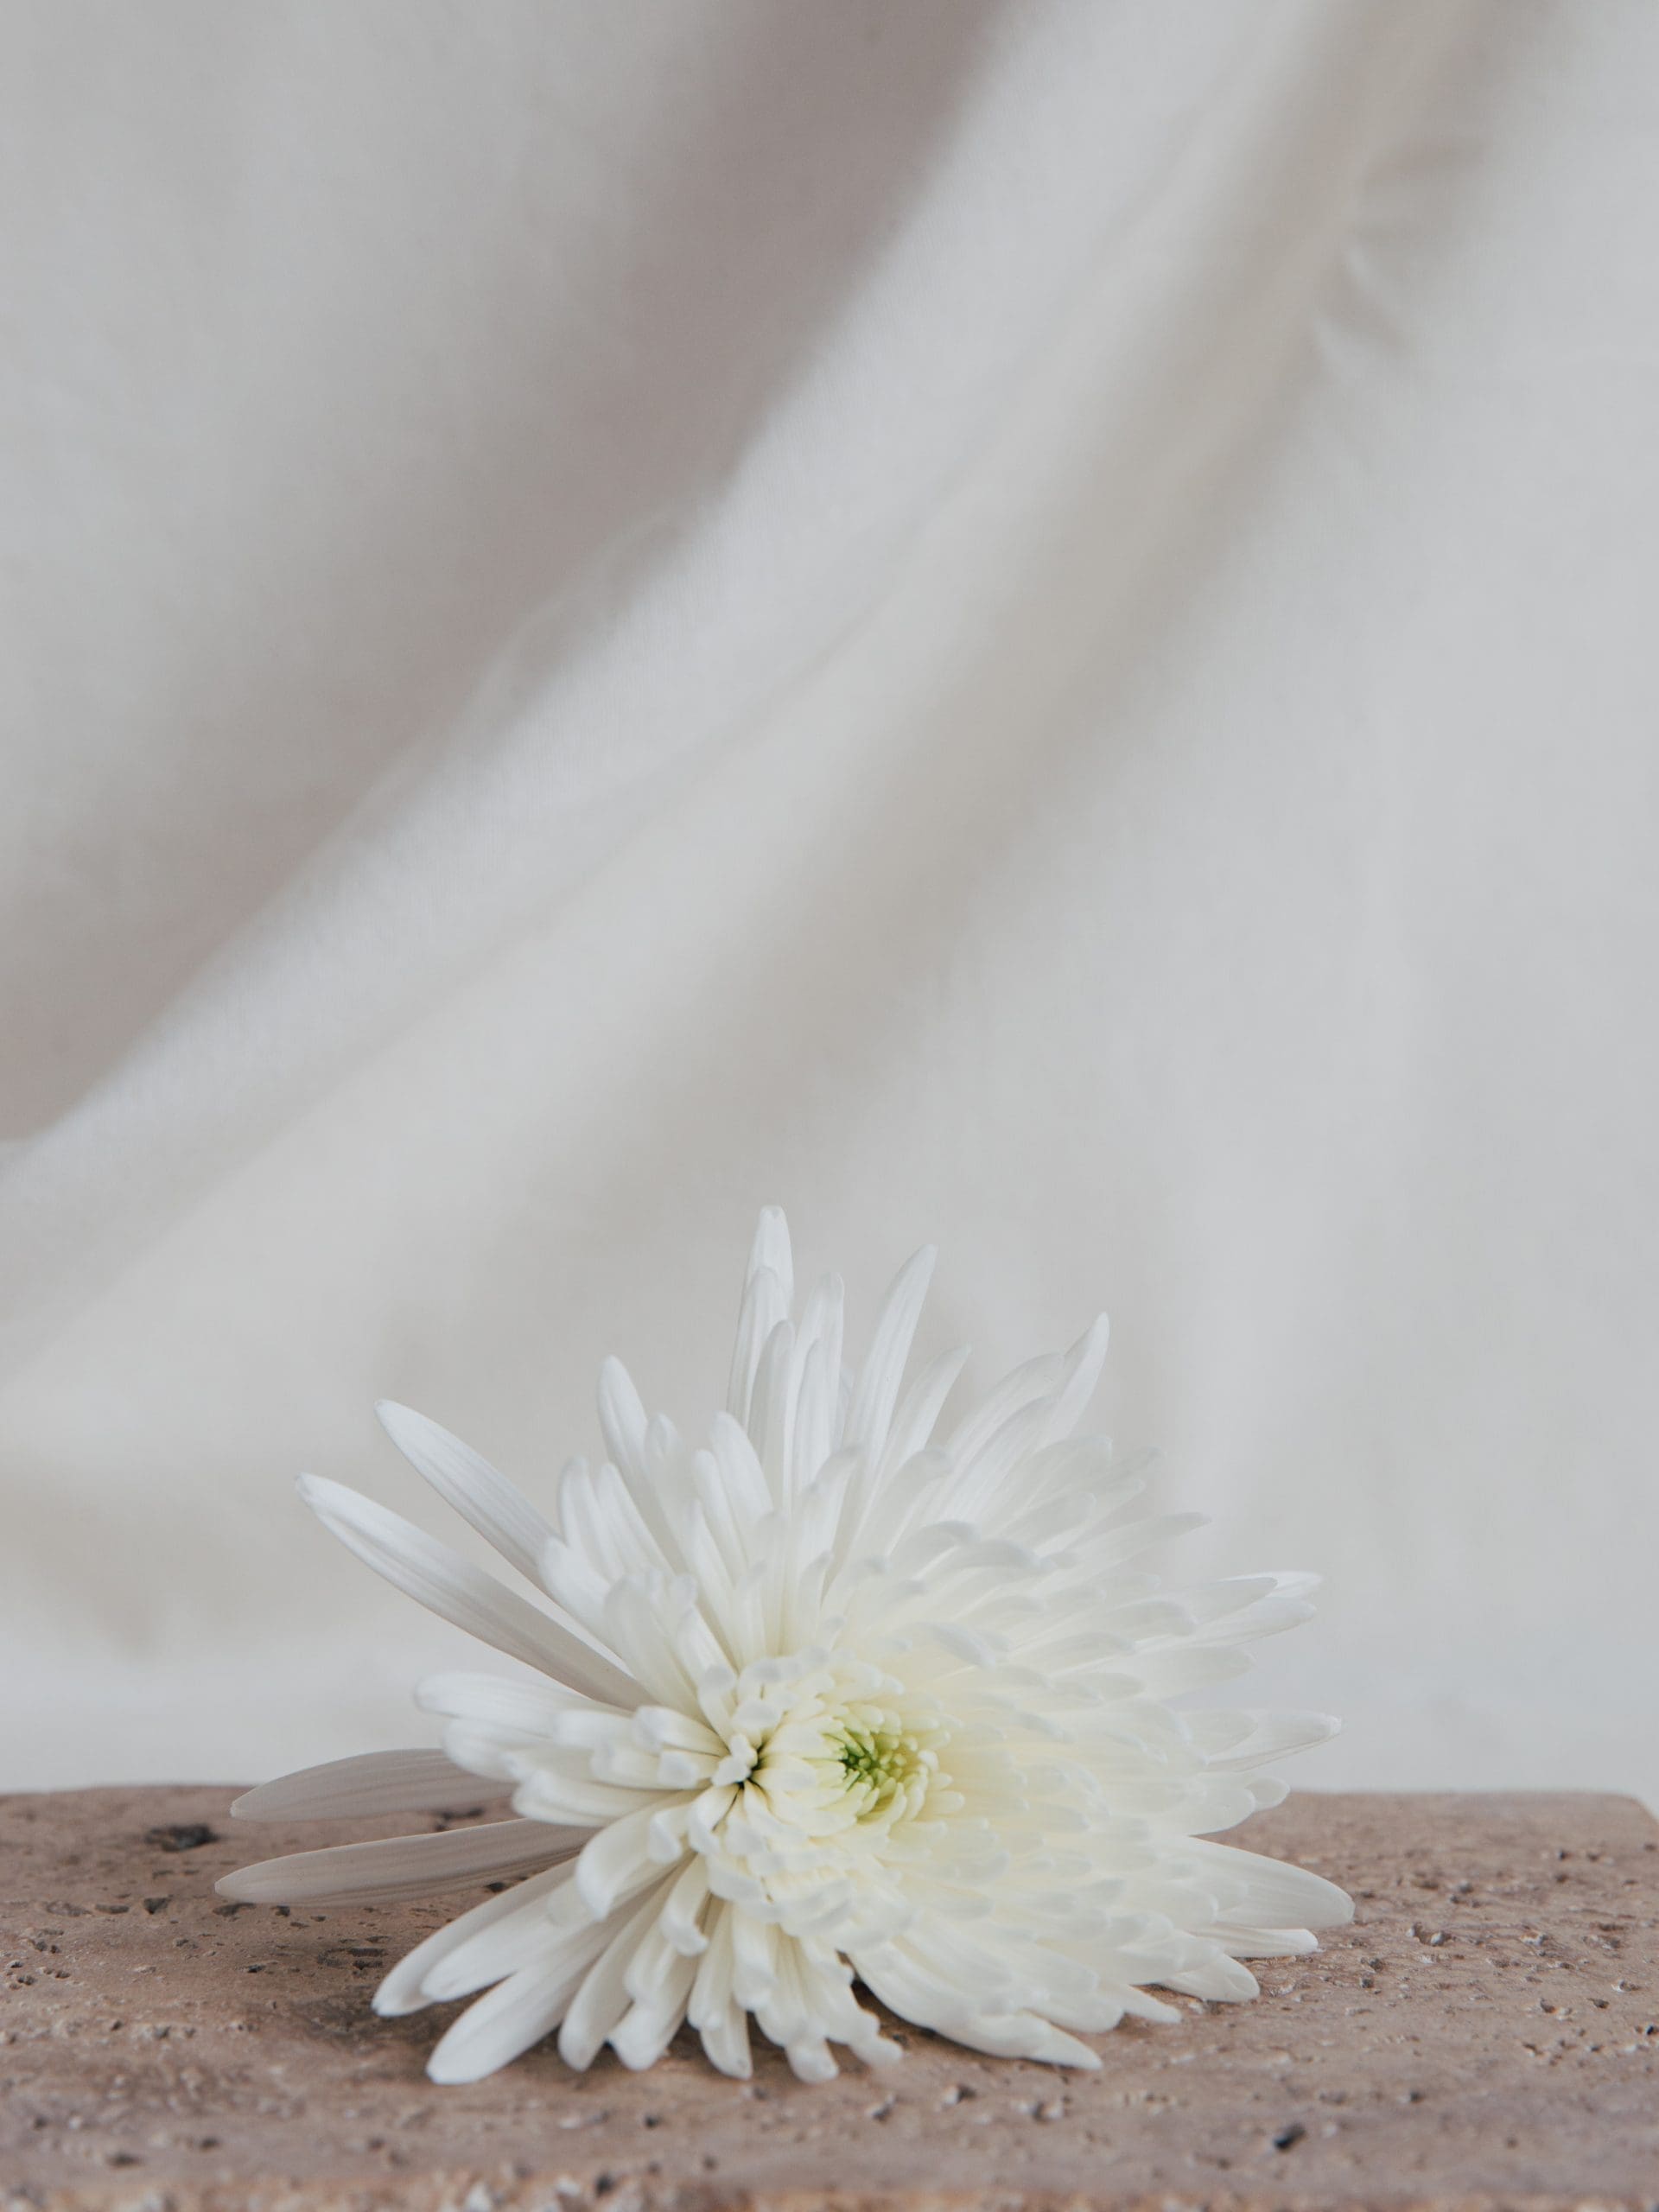 Servicio wedding planner fotografía minimalista elementos naturales